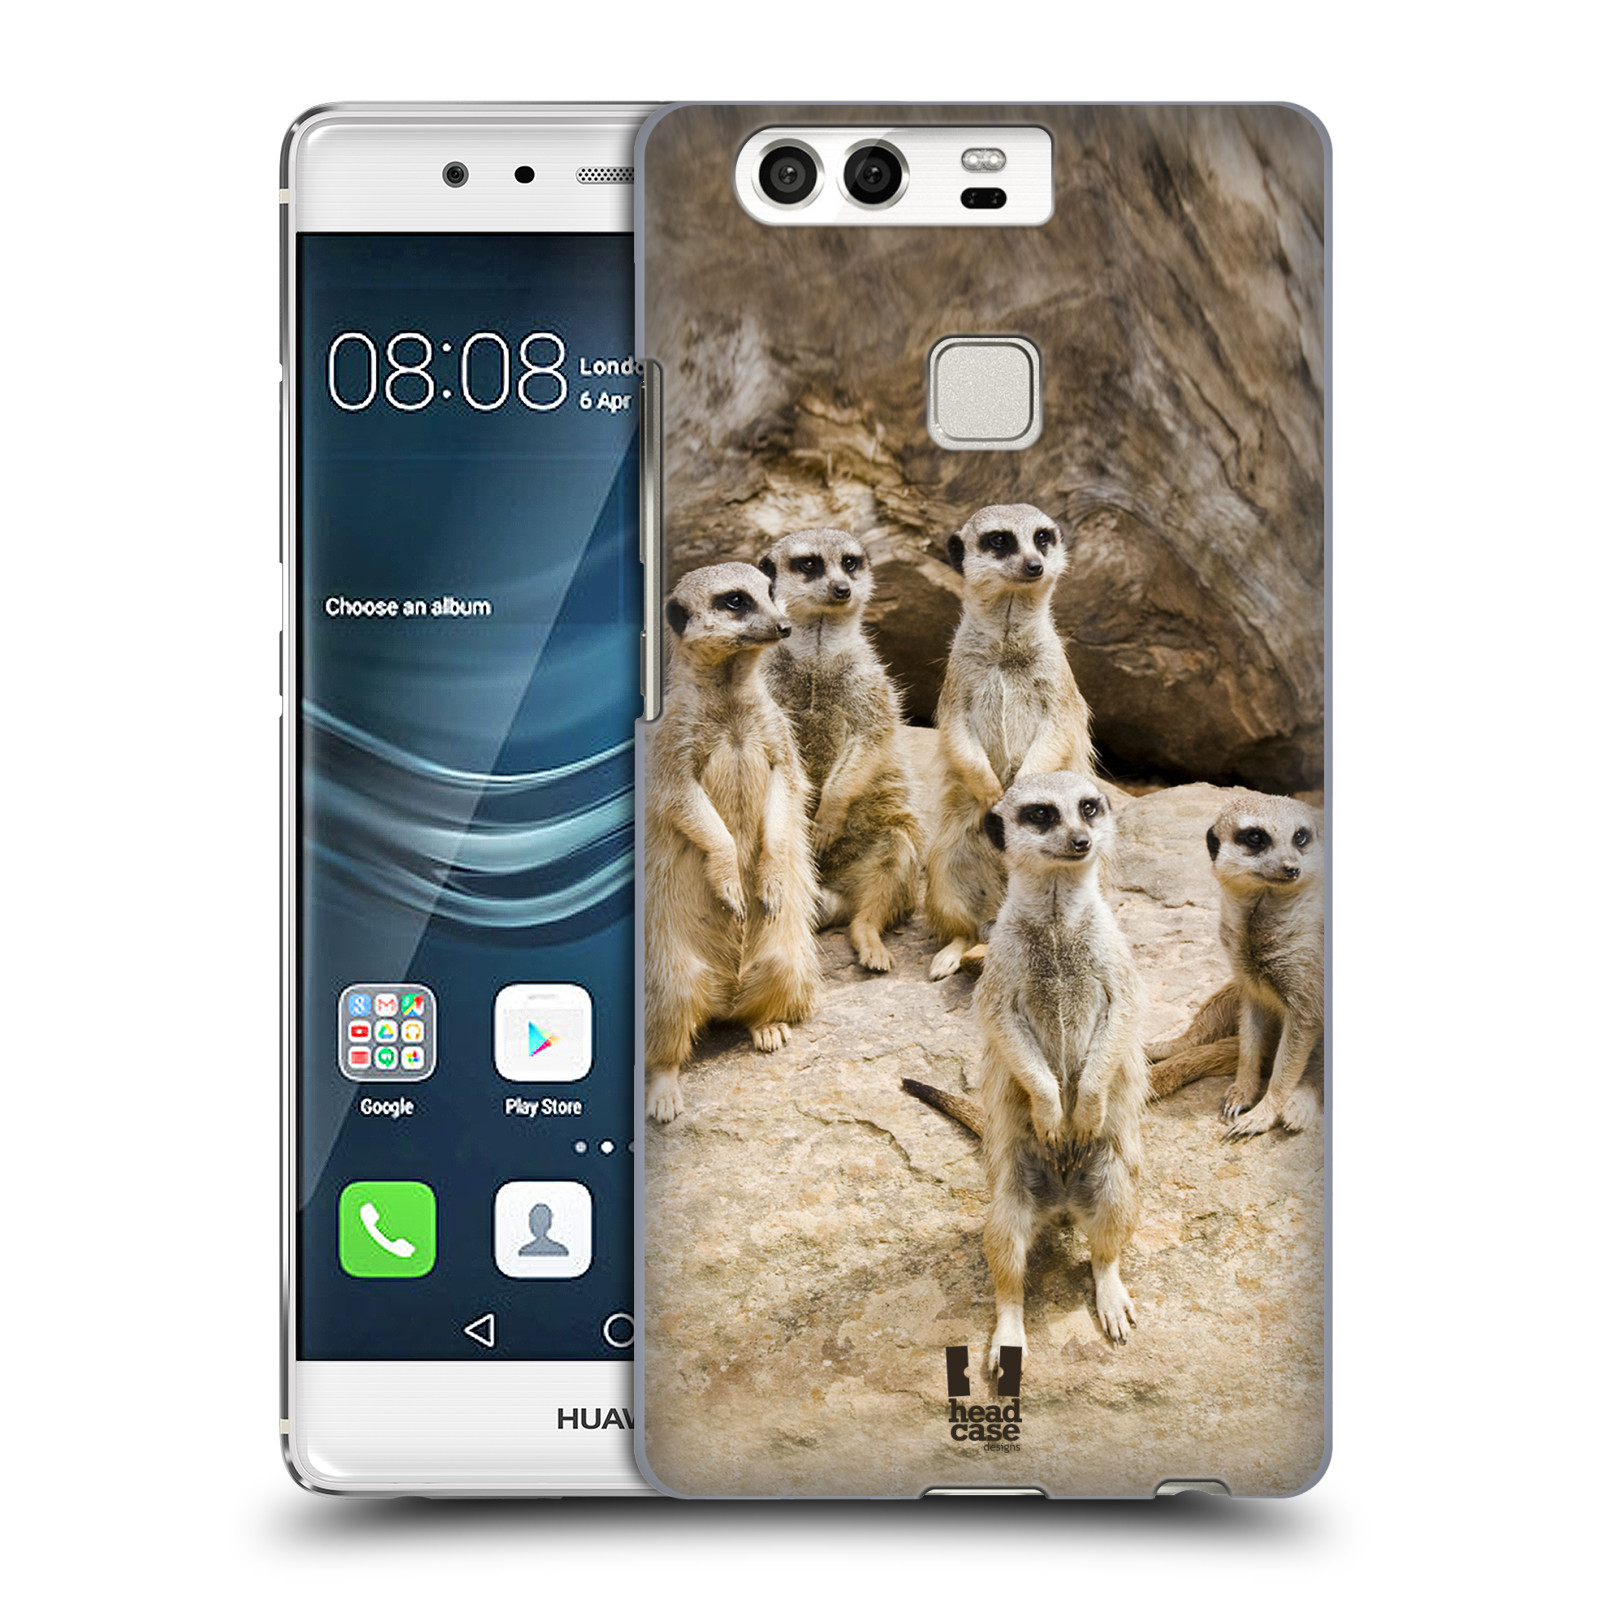 HEAD CASE plastový obal na mobil Huawei P9 / P9 DUAL SIM vzor Divočina, Divoký život a zvířata foto SURIKATA